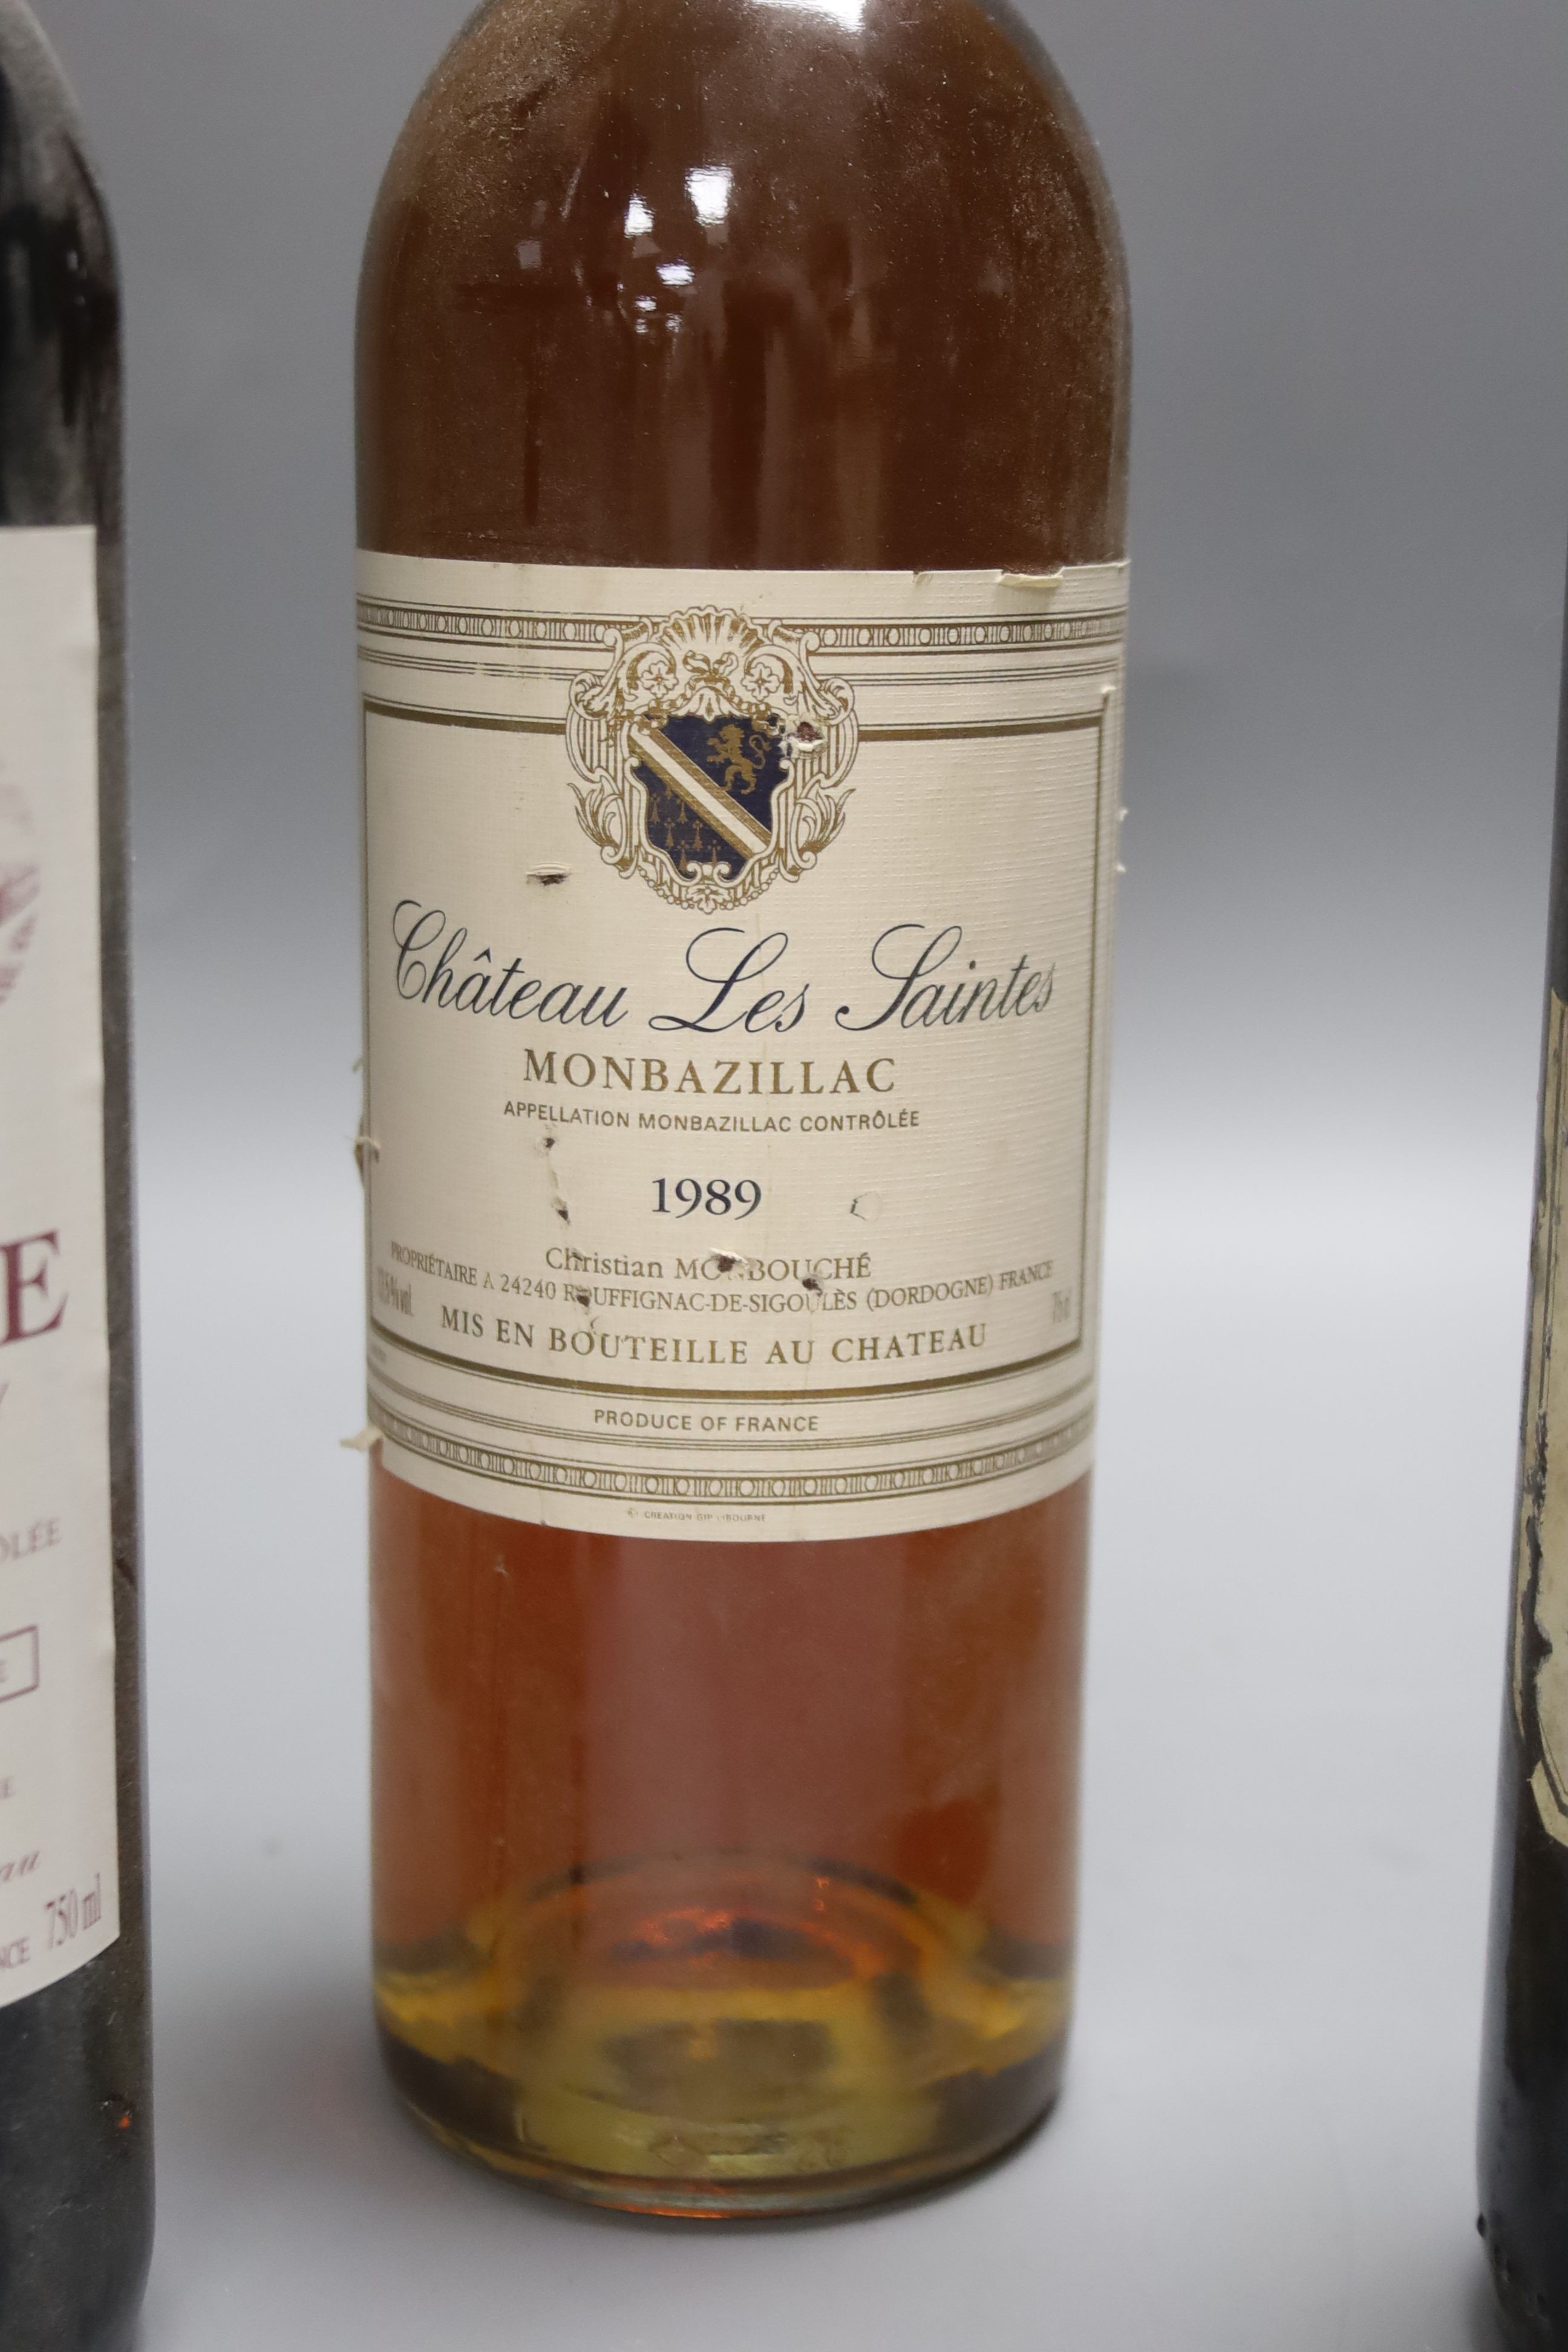 Five red Bordeaux wines including two Chateau Beau Site, Saint Estephe, 2001, one Chateau de Saint Puy, 1982, one Ludon Pomies Agassac, 1995, one Giscours, 1959 and one Les Saintes, Monbazillac, 1989.